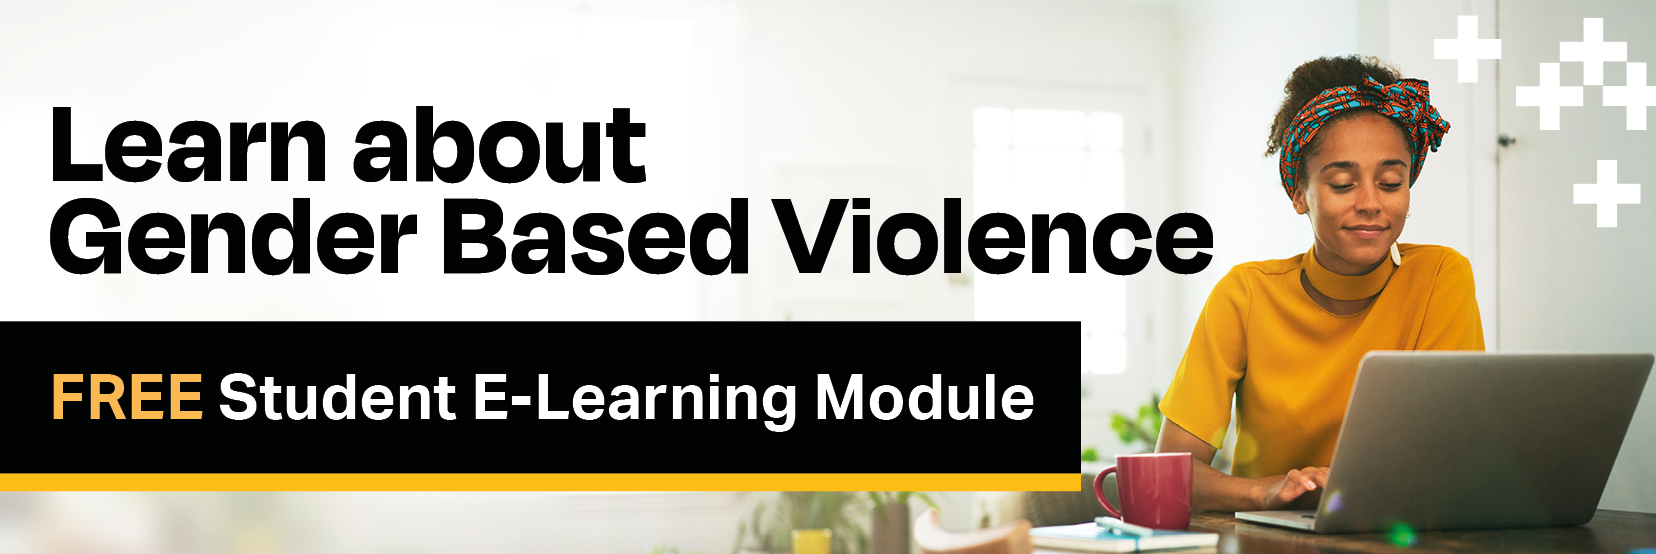 Learn about gender-based violence banner